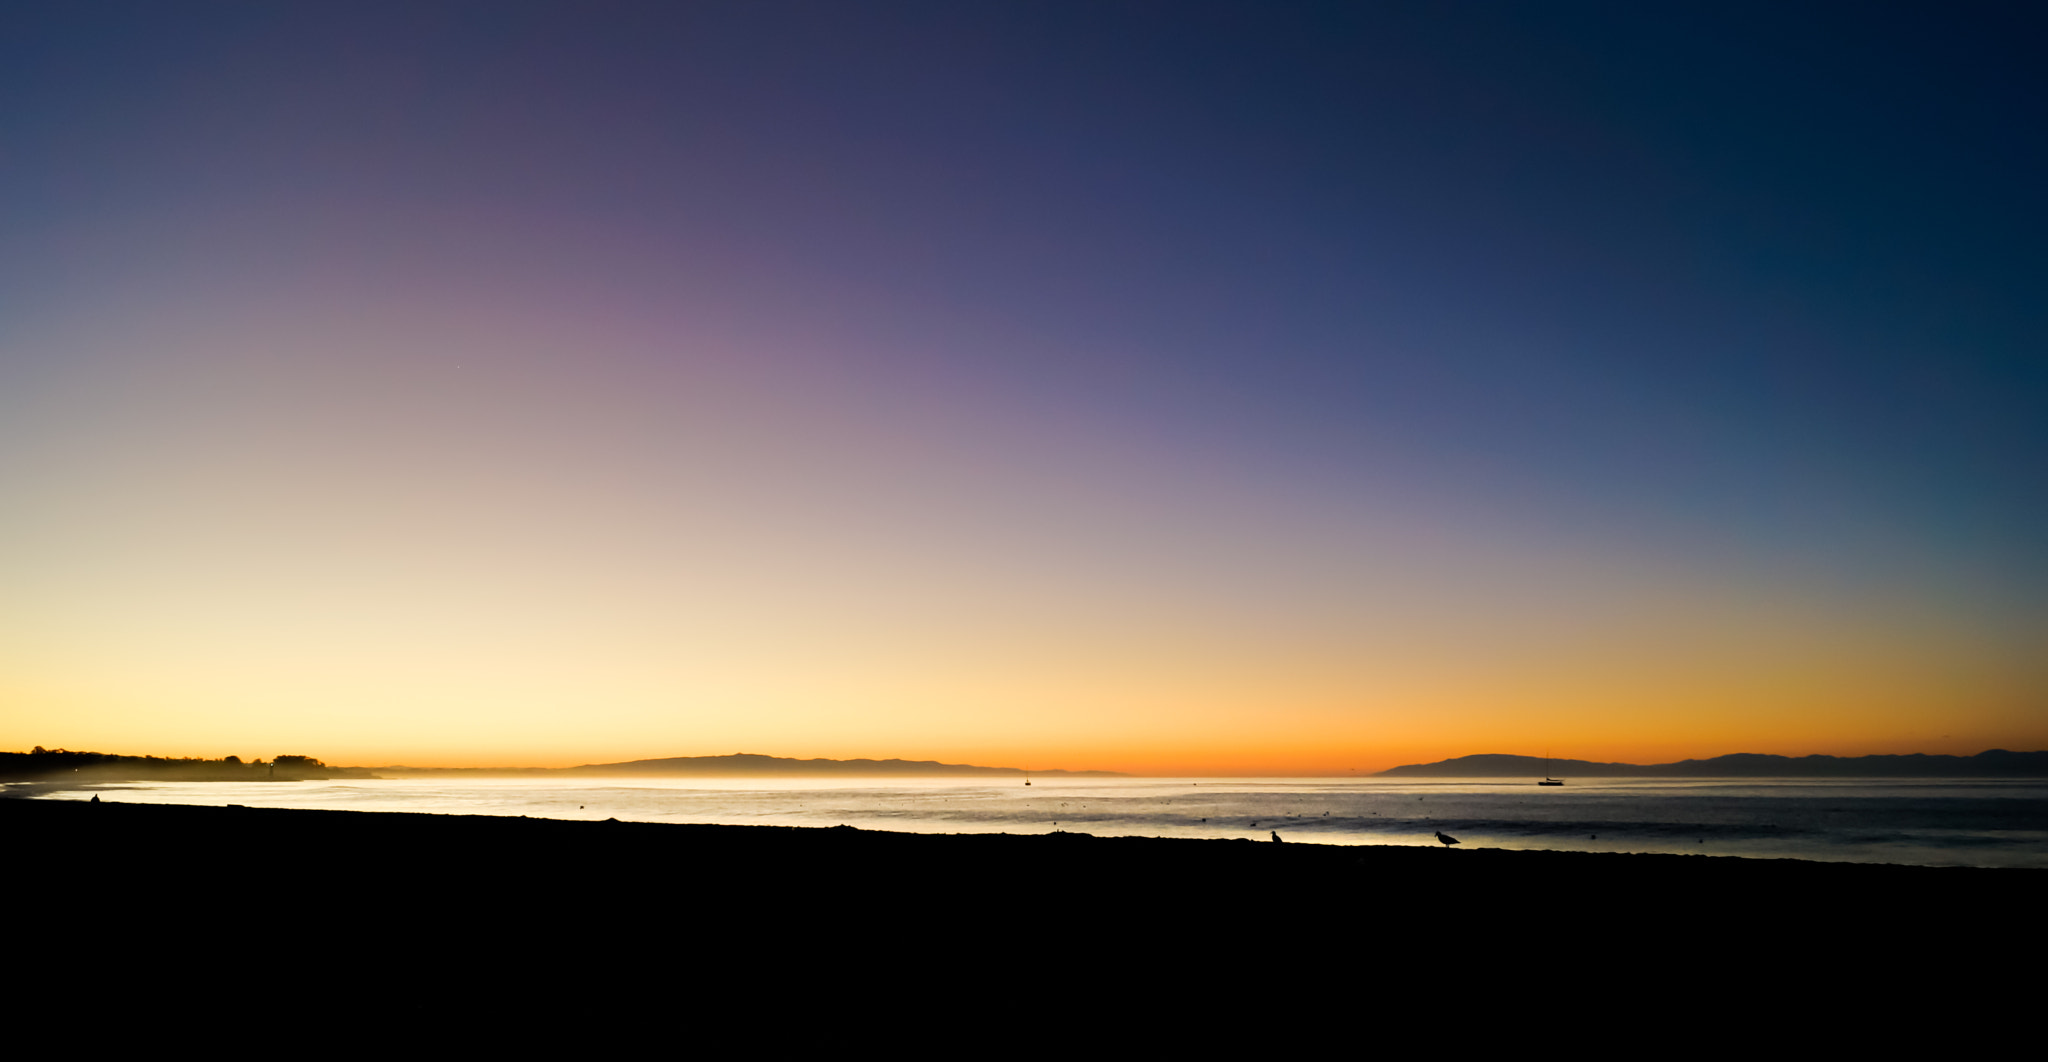 Dawn on the bay